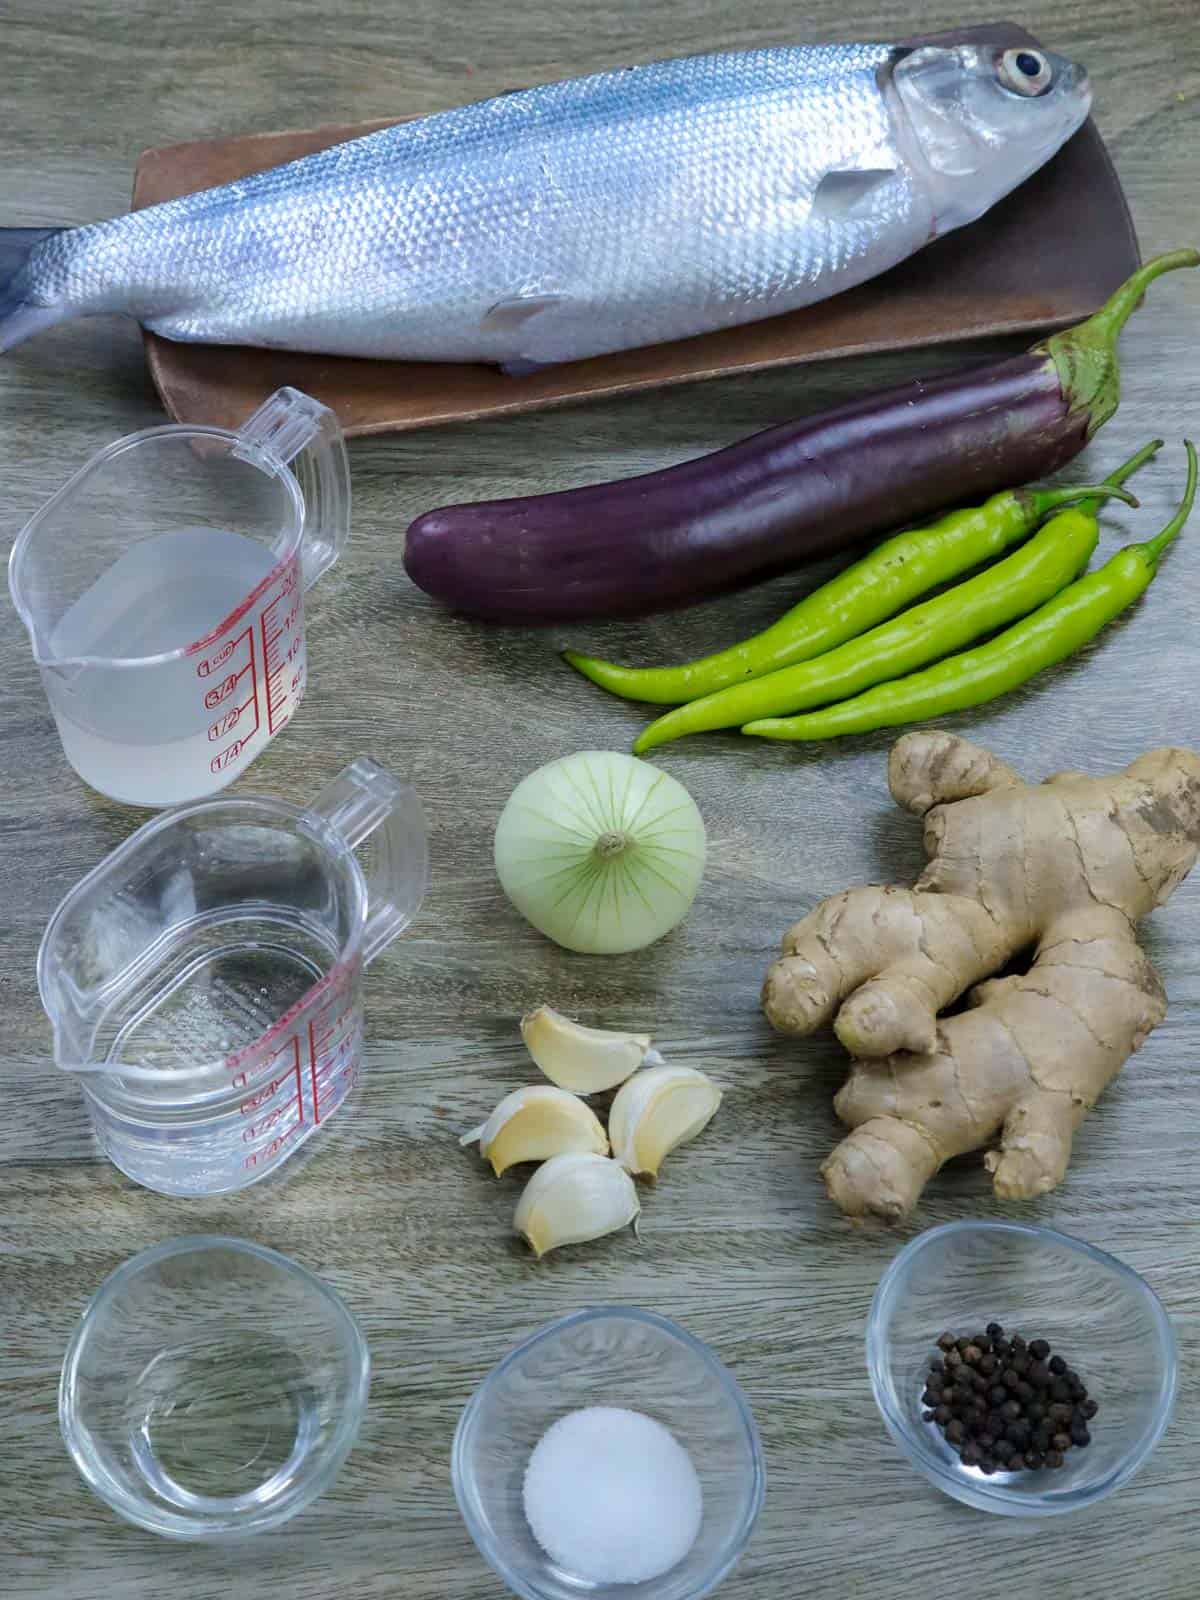 milkfish, ginger, garlic, onion, chili peppers, vinegar, salt, pepper, eggplants, oil